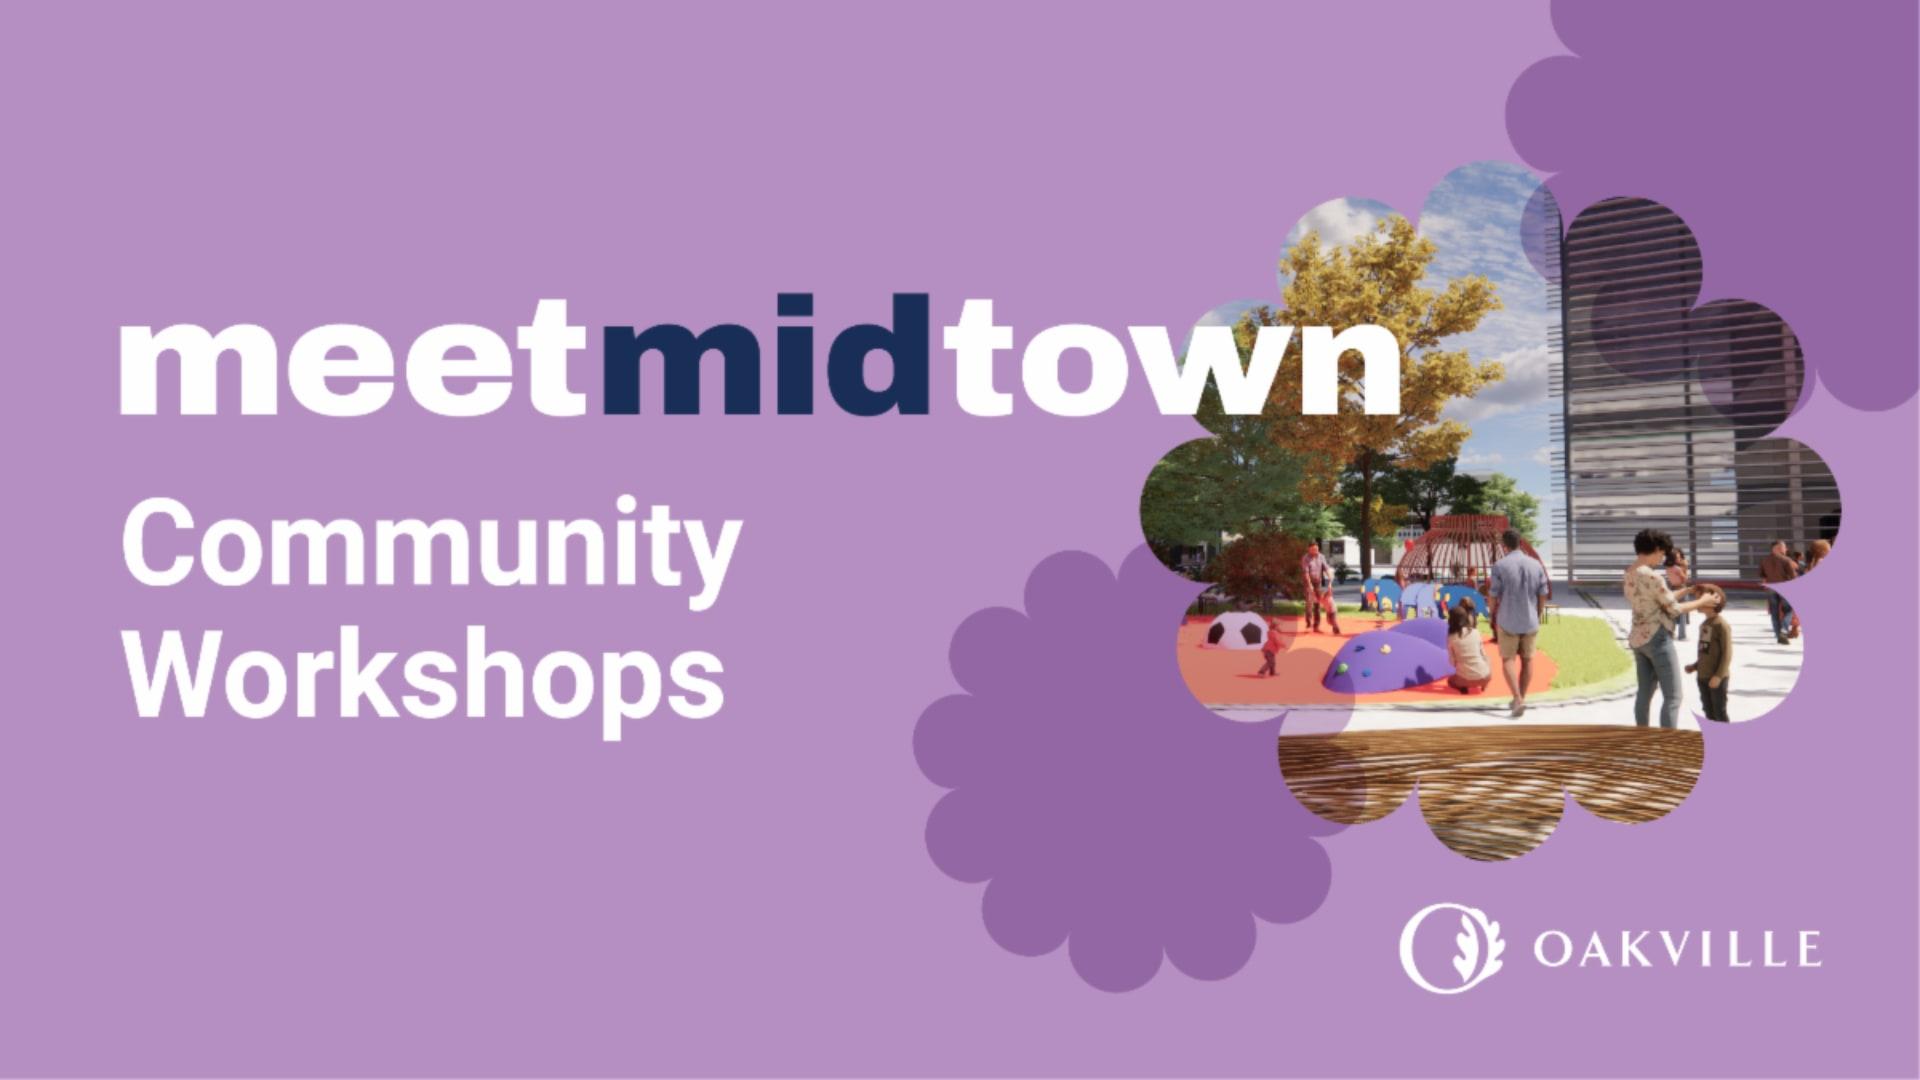 meetmidtown Community Workshops